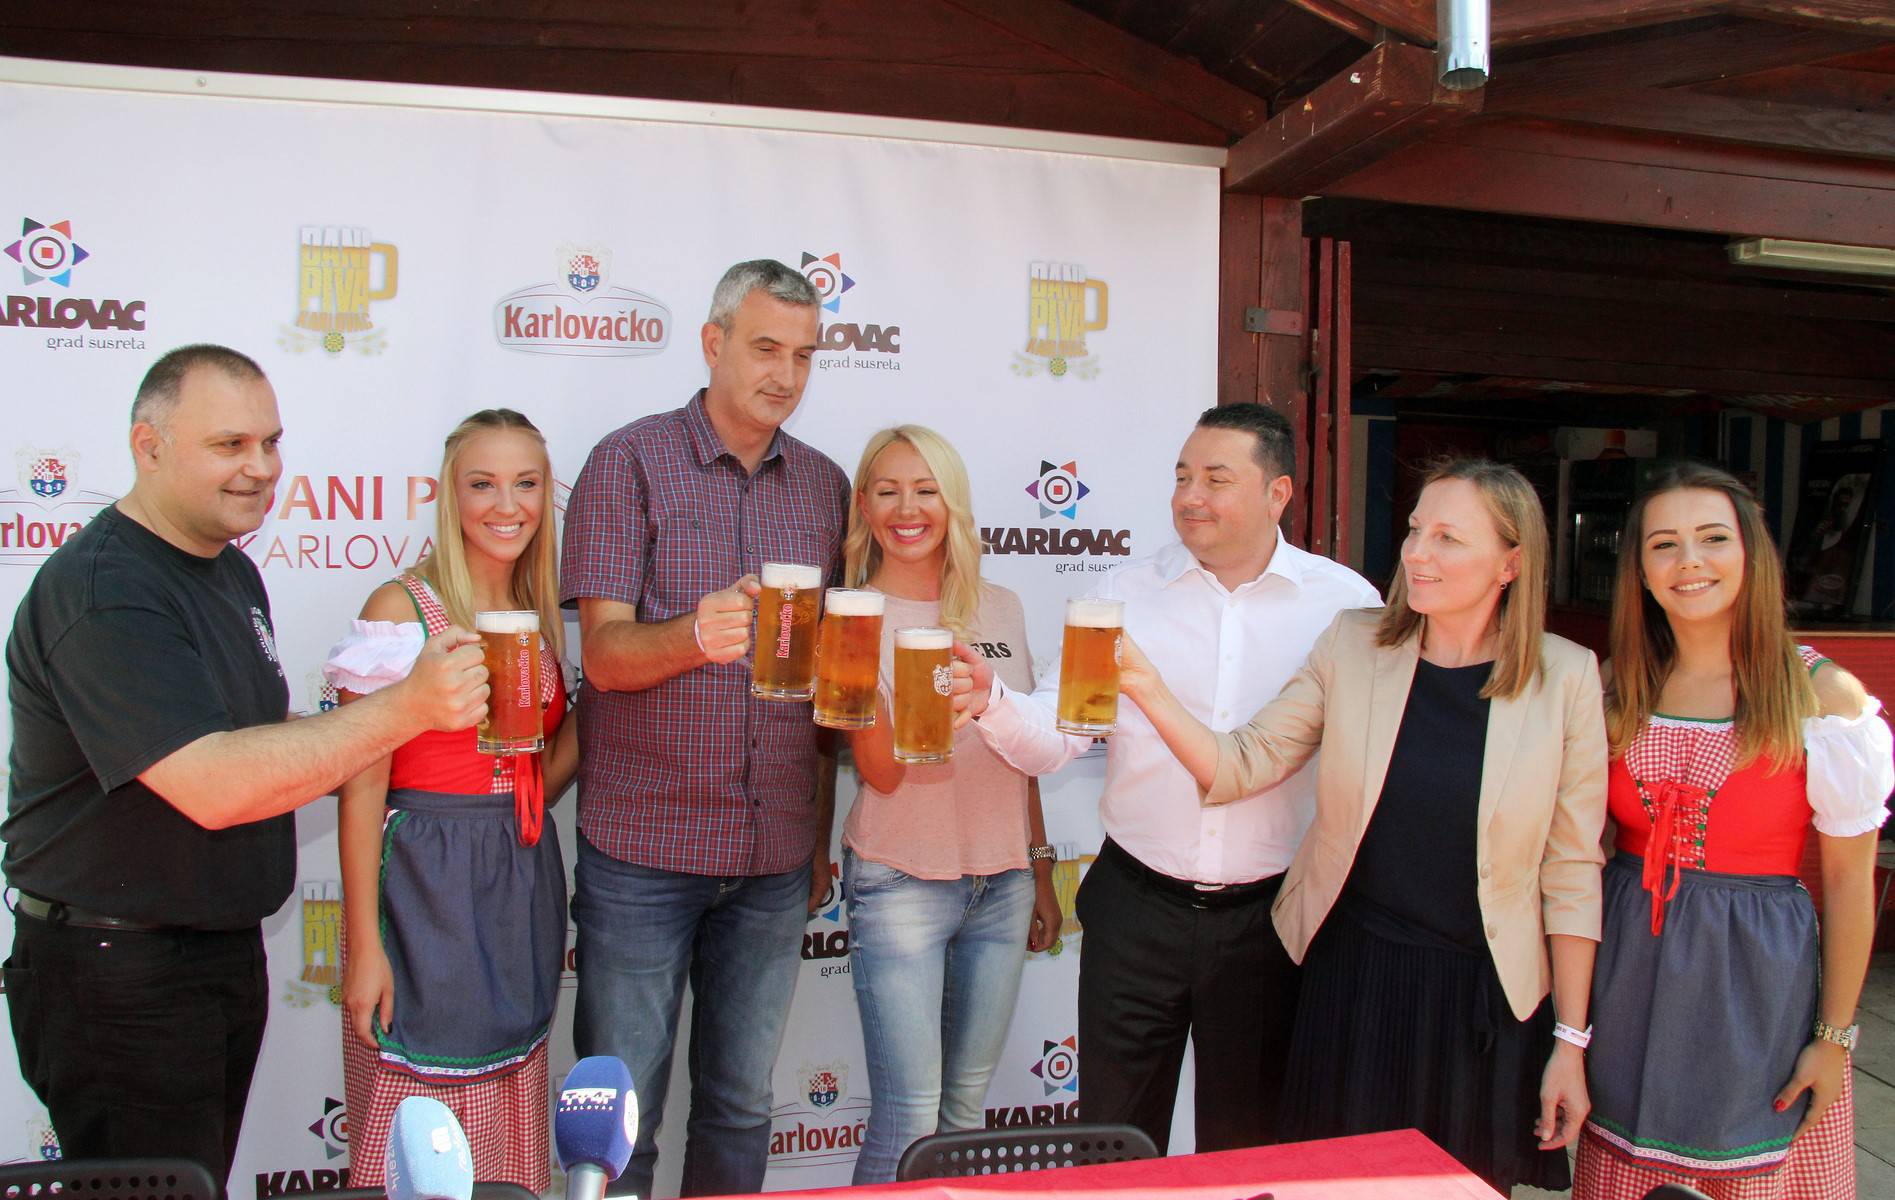 Dani piva Karlovac u velikom stilu slave 30. rođendan